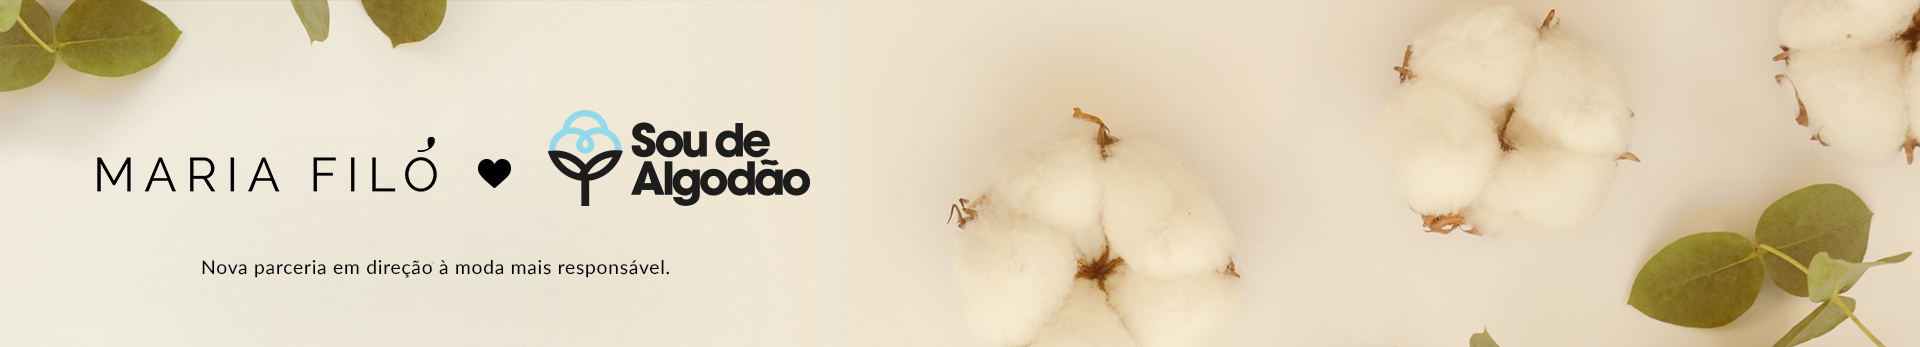 Banner catálogo - sou de algodão